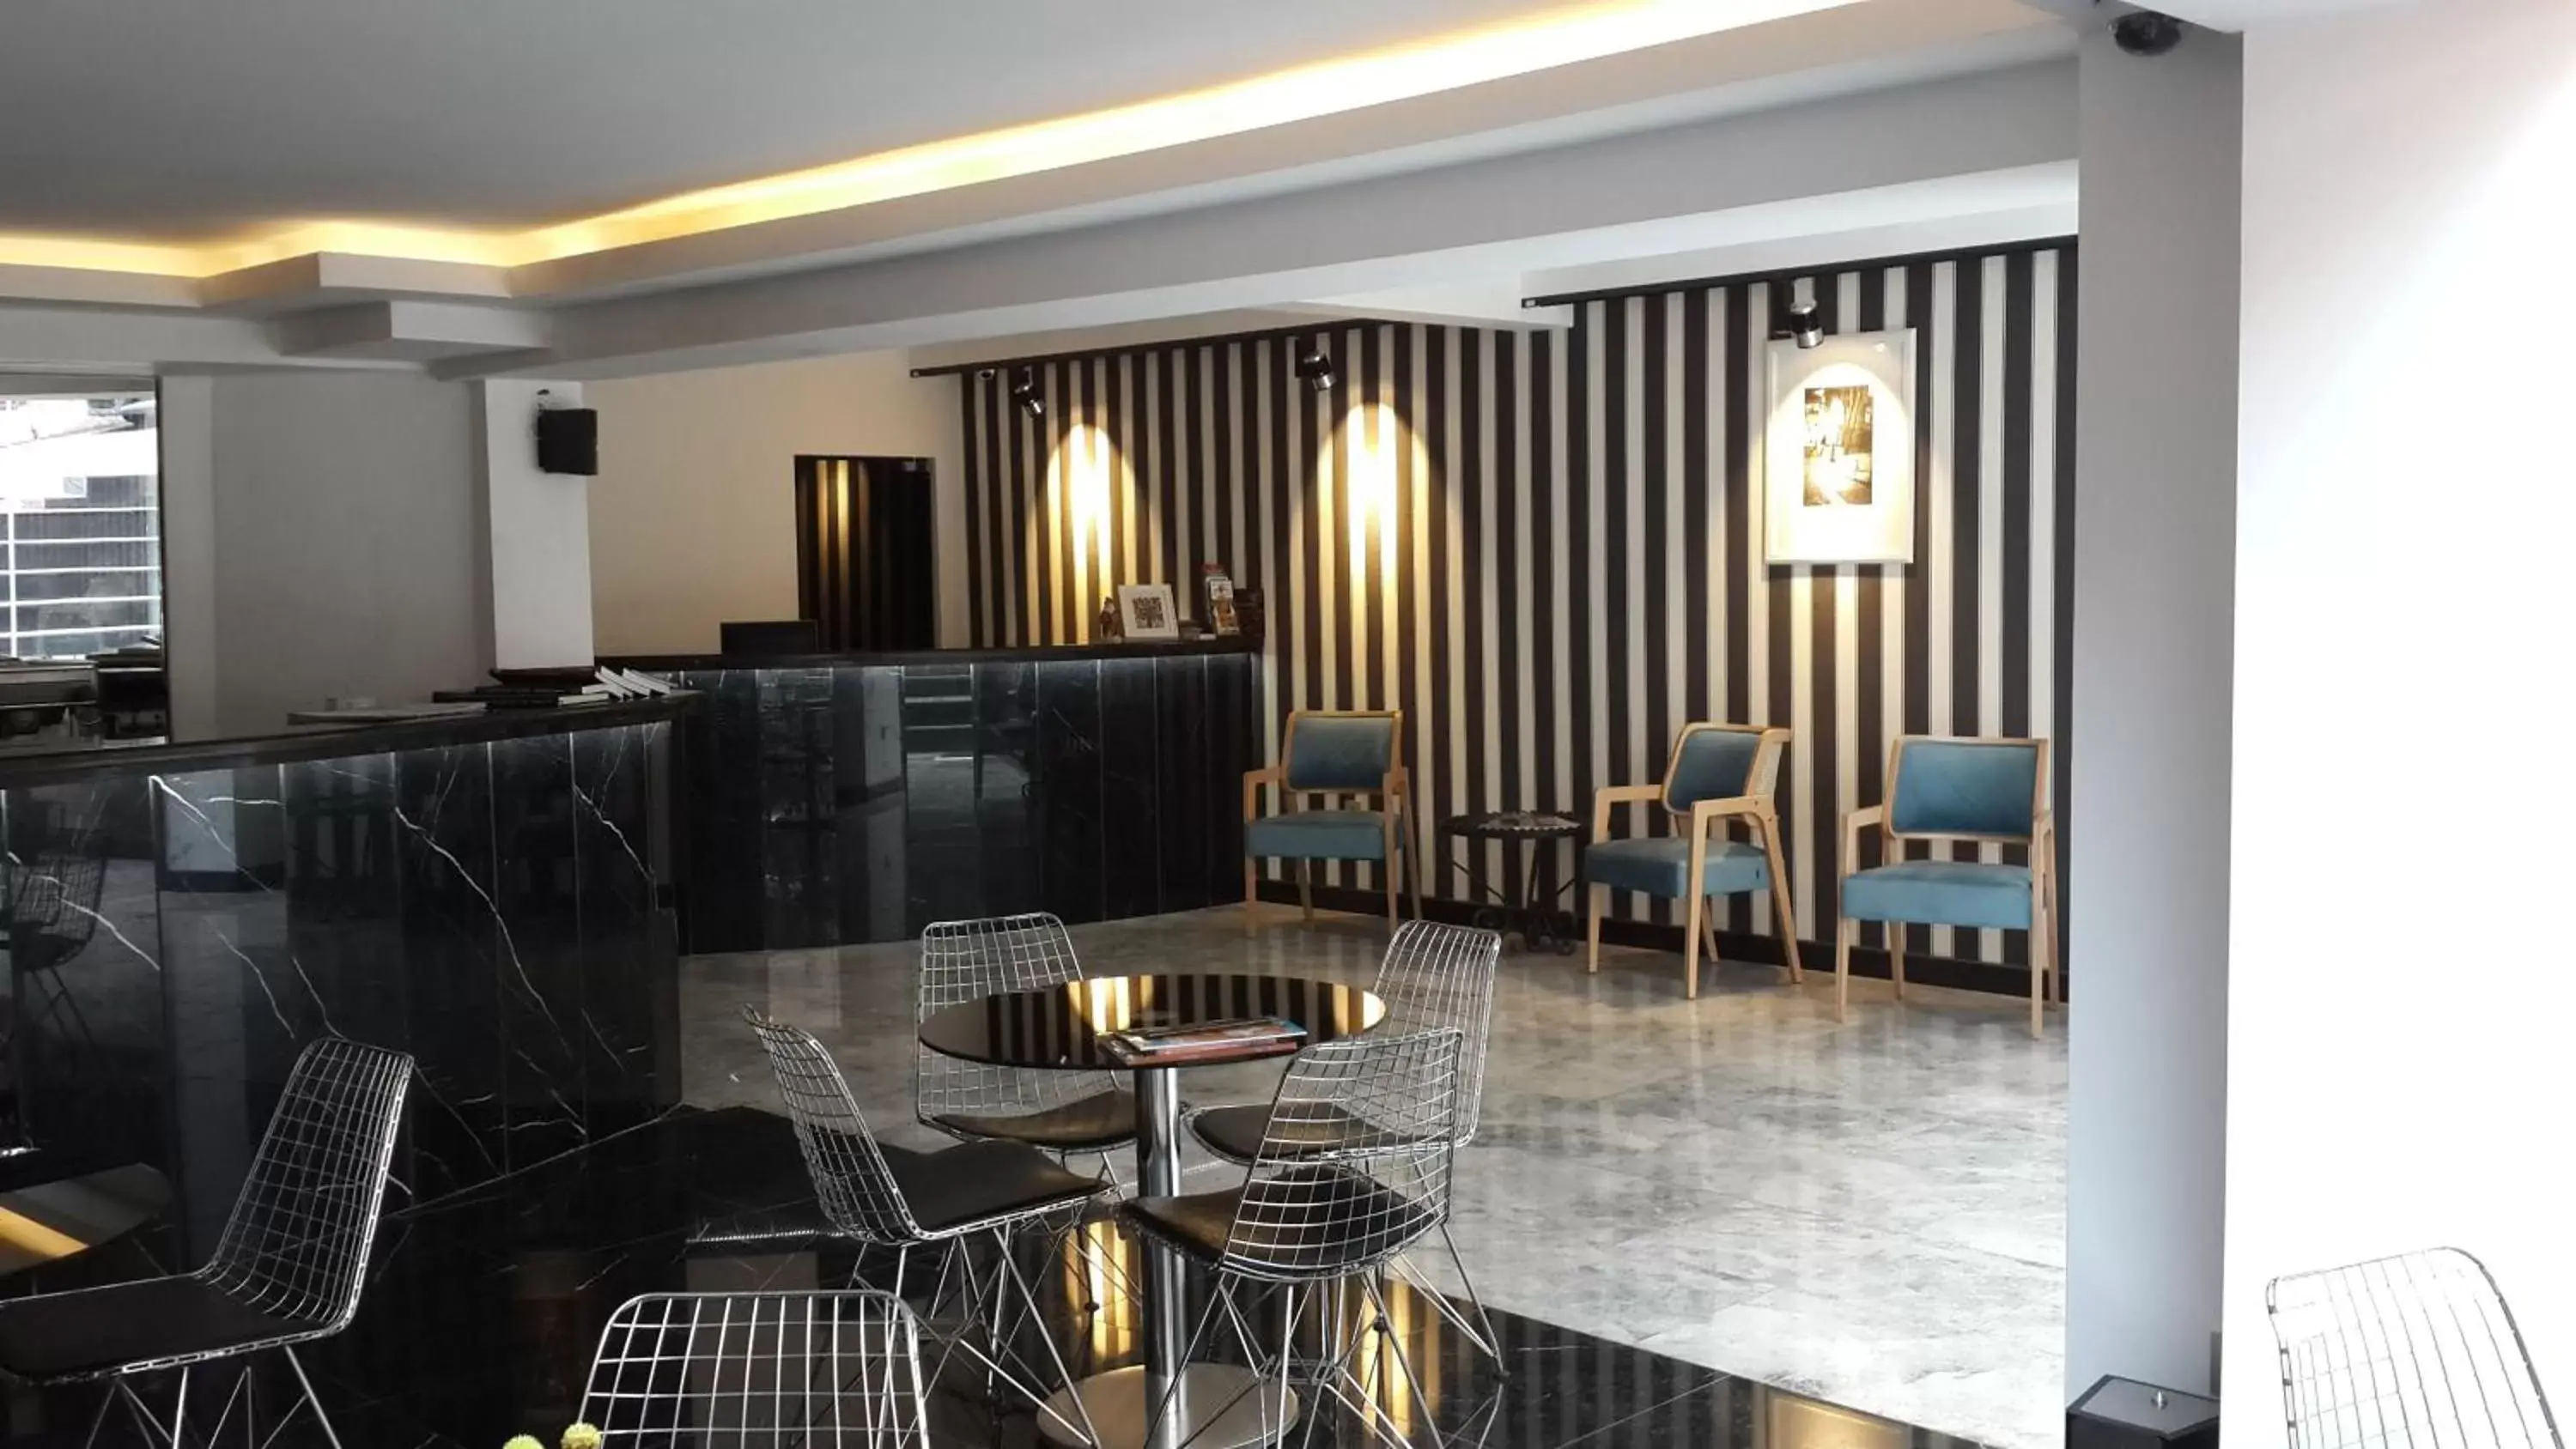 Lobby or reception in Semsan Hotel